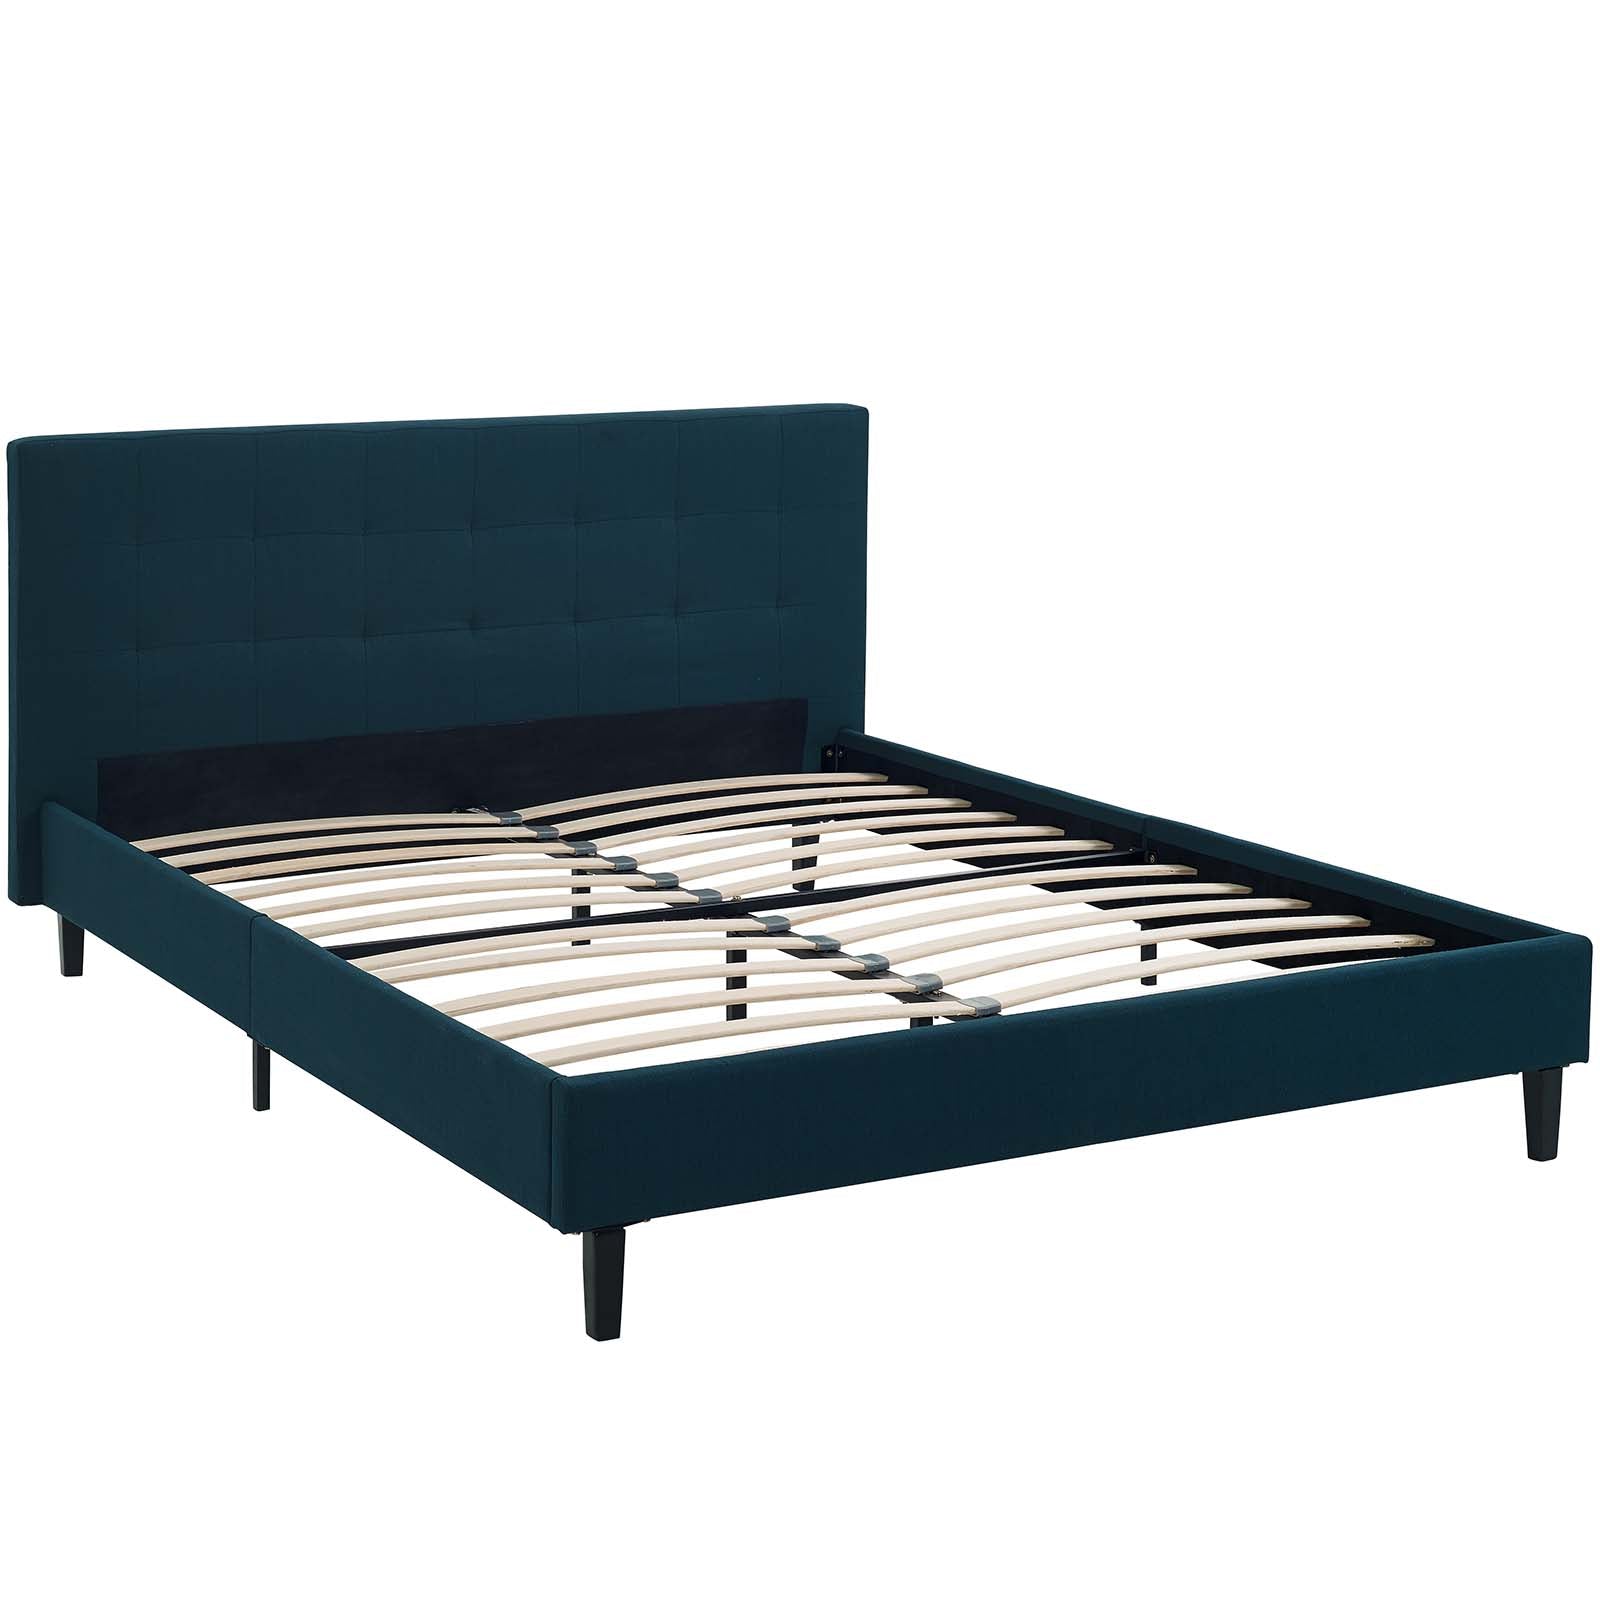 Modway Beds - Linnea Queen Bed Azure